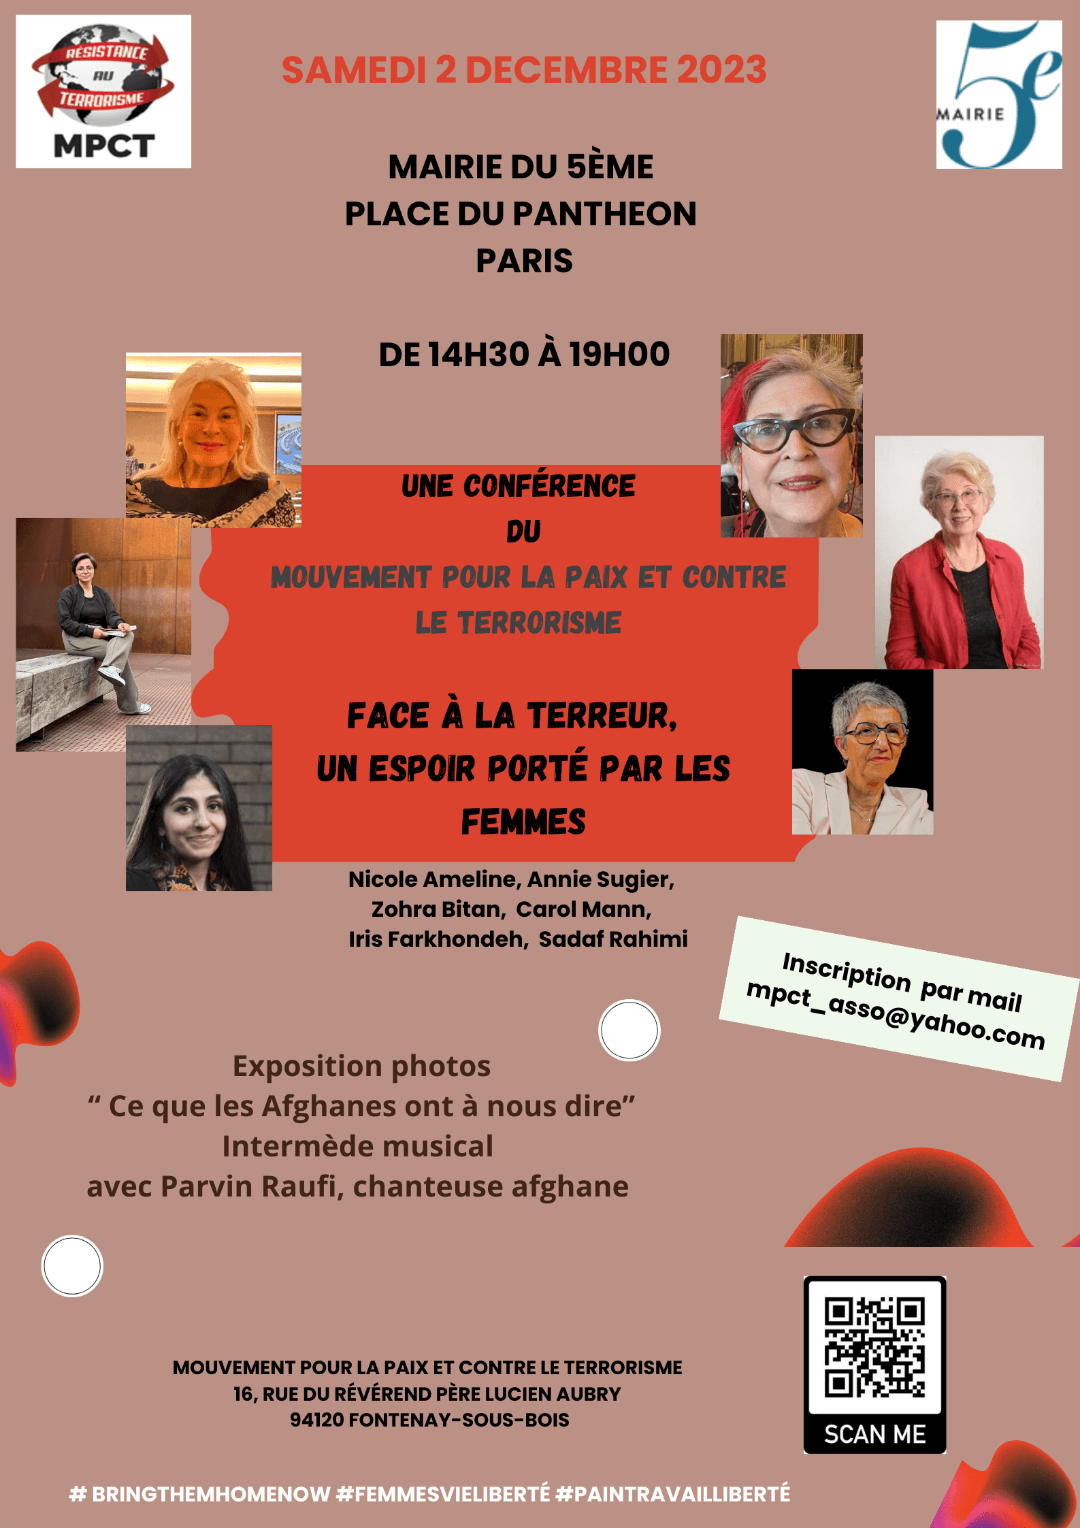 « Face à la terreur, un espoir porté par les femmes » Paris, 2 décembre 2023